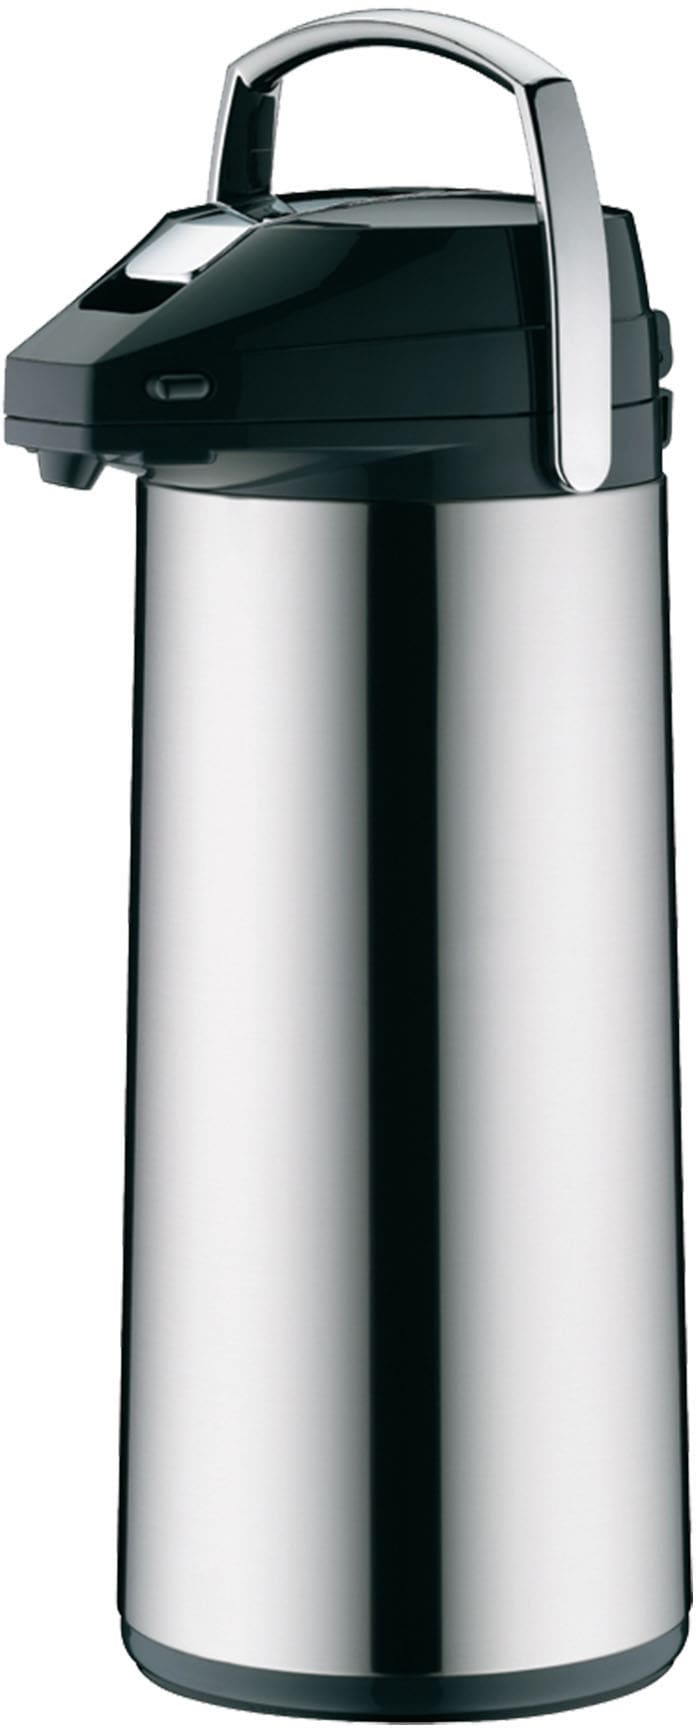 Pump-Isolierkanne, 3,0 l, Edelstahl, mit Glaseinsatz